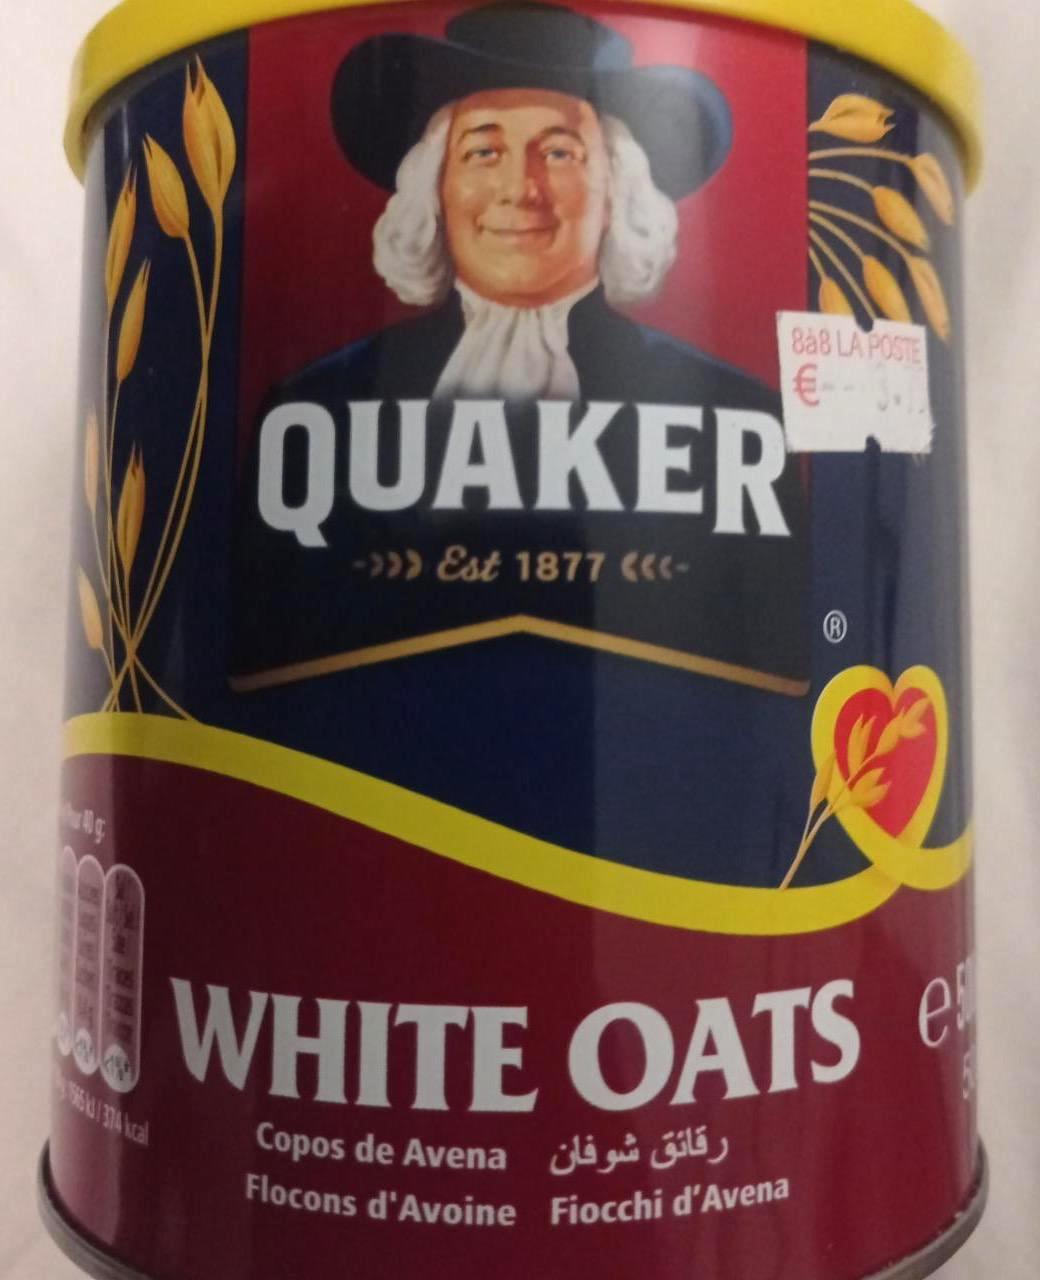 Képek - White oats Quaker